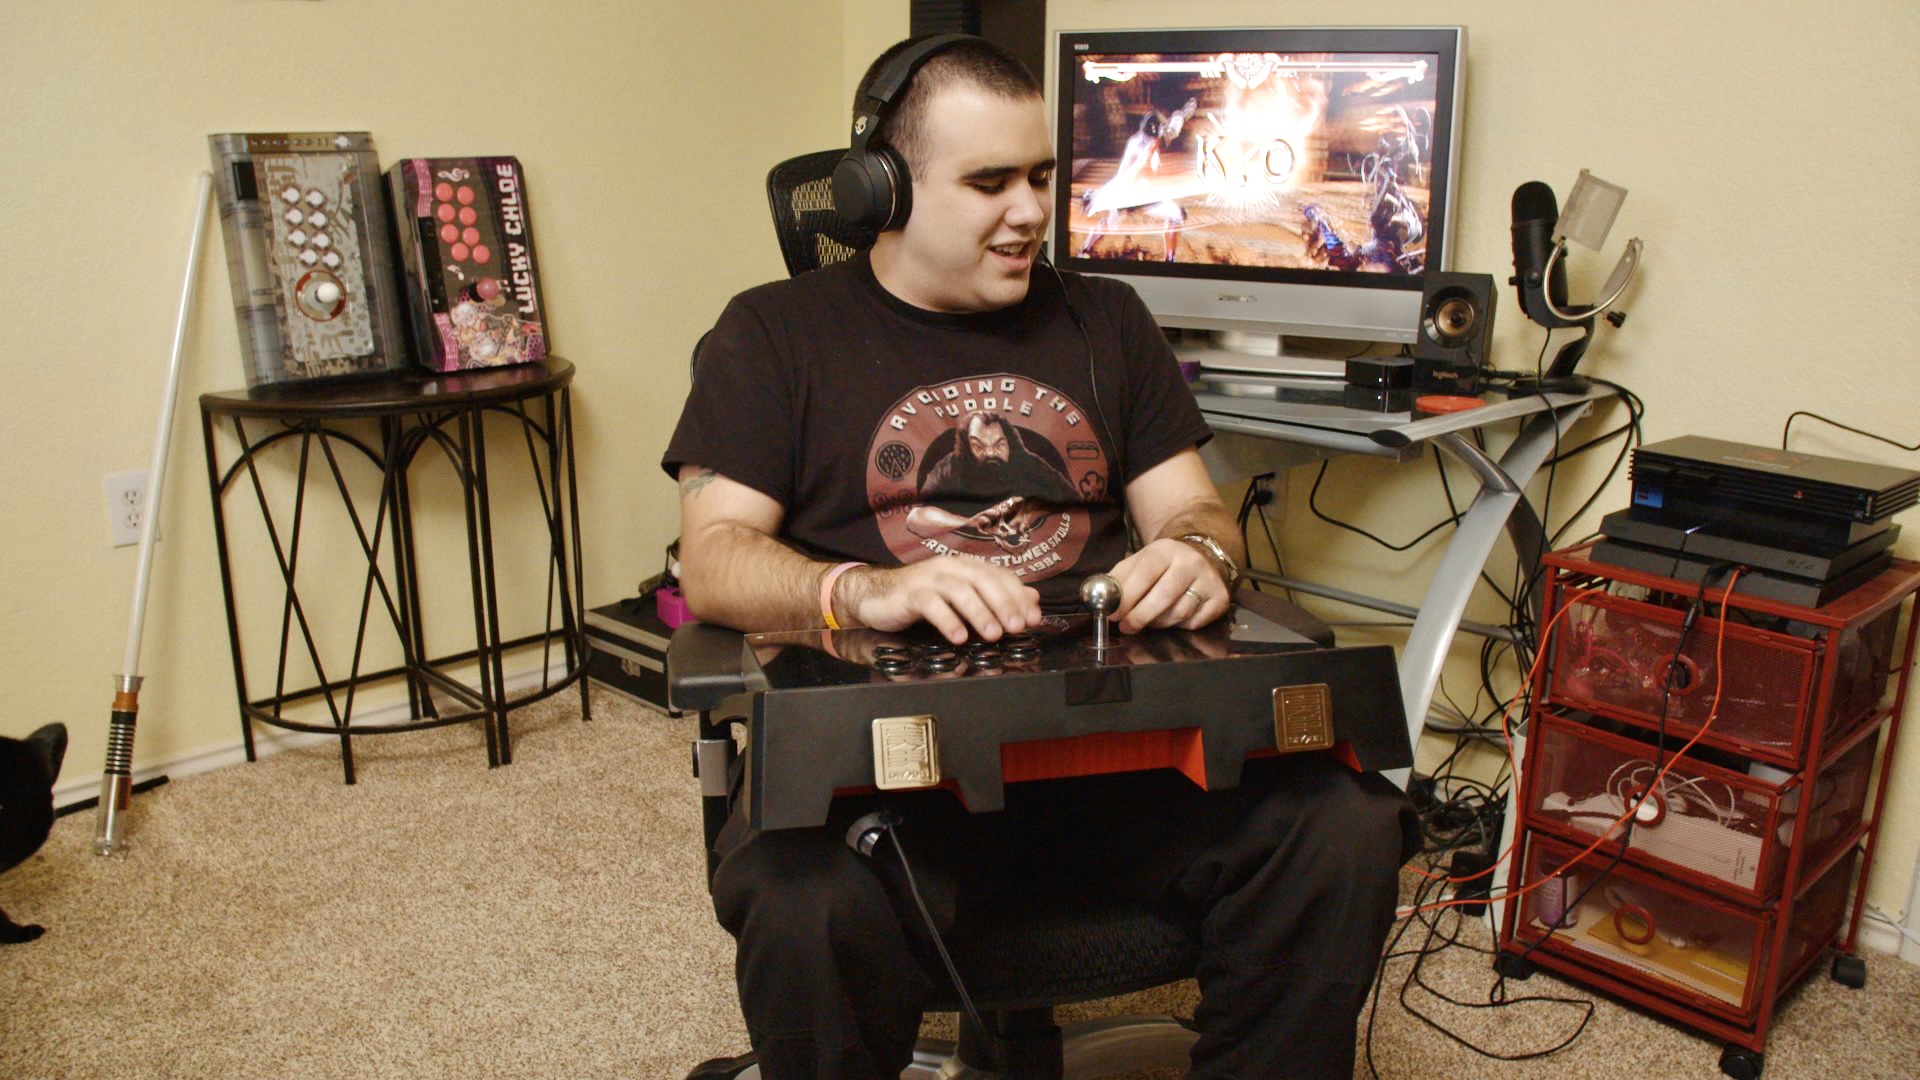 Fotografía de una persona con discapacidad visual jugando videojuegos en una habitación. En su regazo hay una consola con diferentes controles, como botones y palancas. Al fondo hay un escritorio con una computadora encendida y varias consolas de videojuegos.